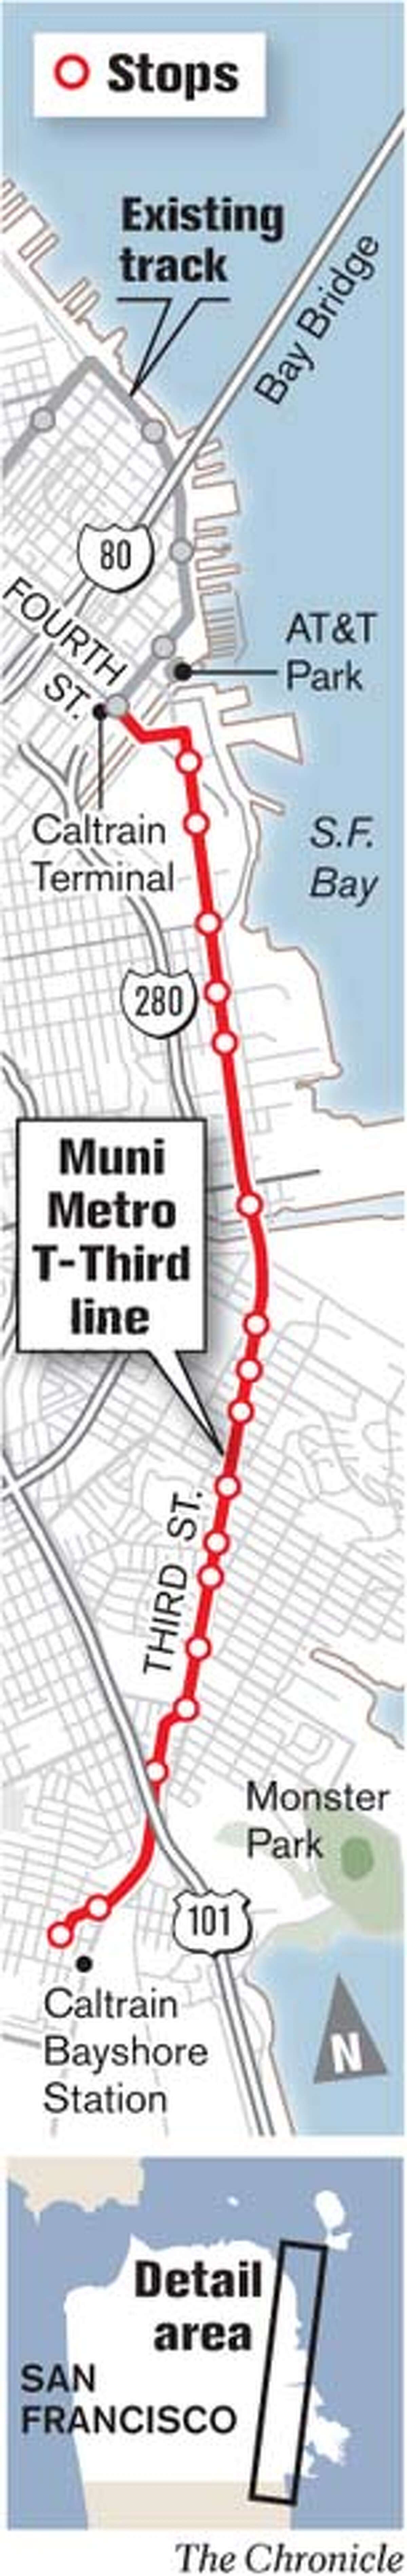 Muni Metro T-Third Line. Chronicle Graphic